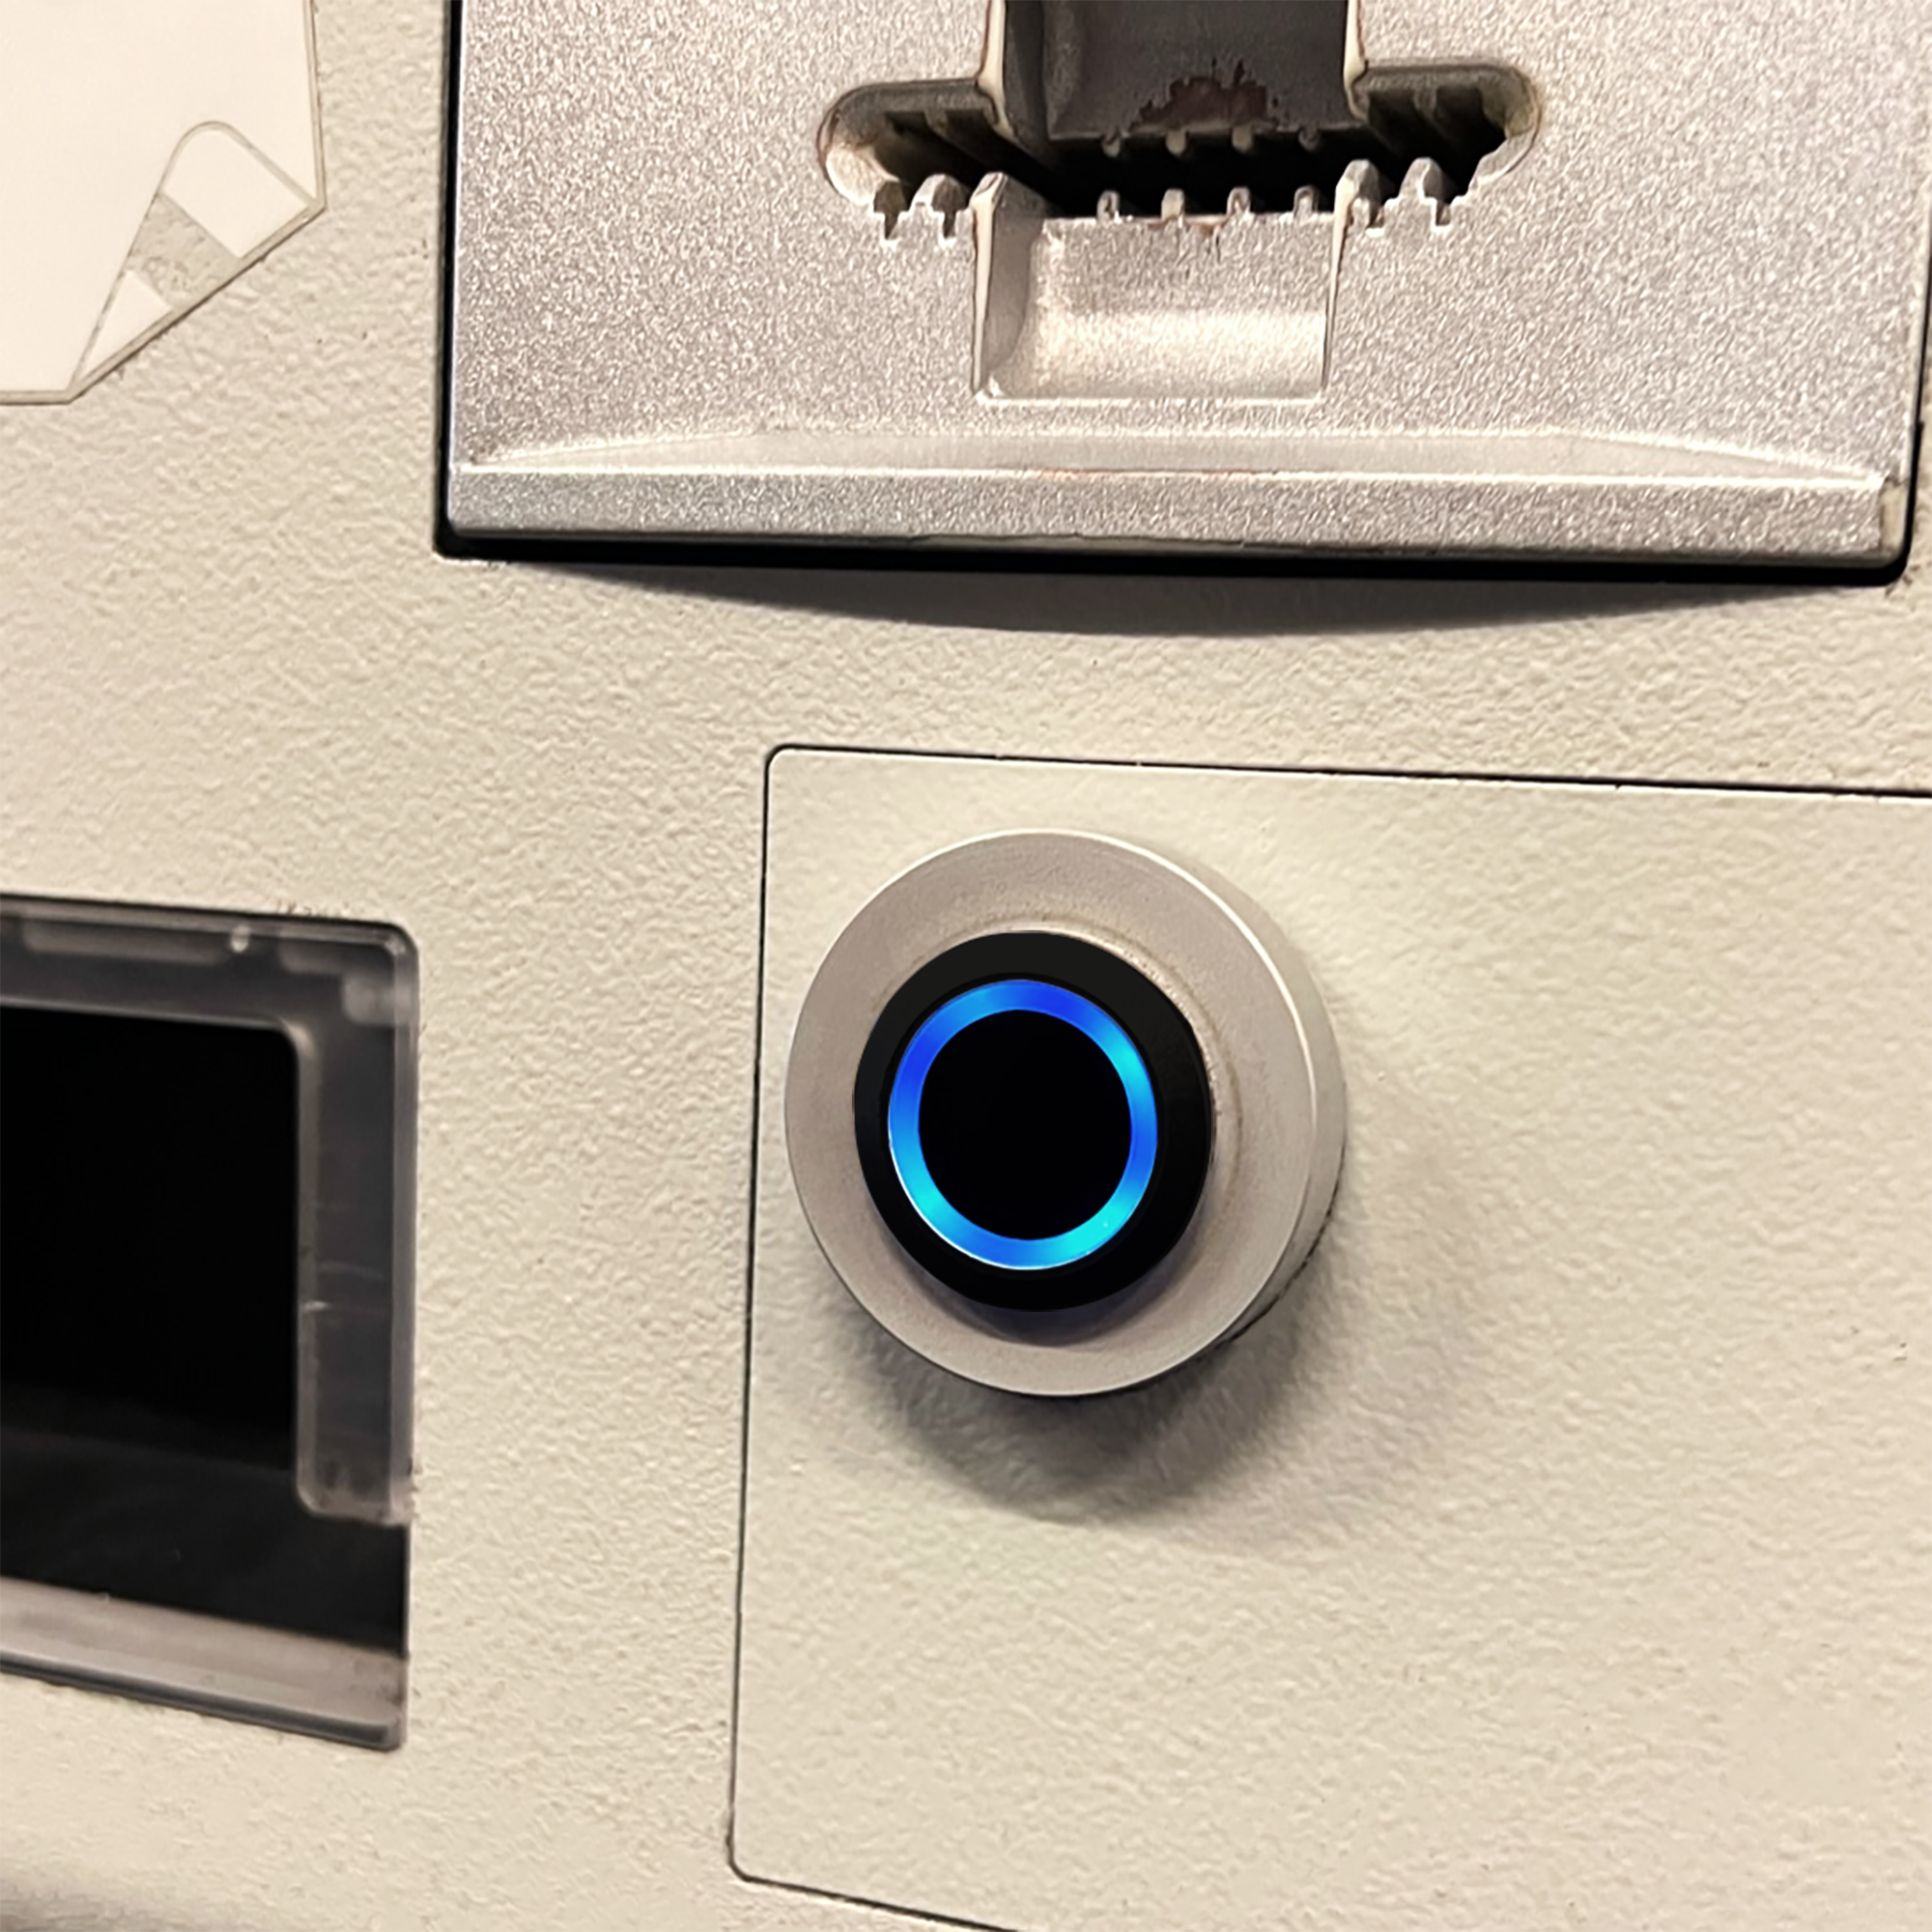 Black Billet Button with Blue Illumination Installed on Machine